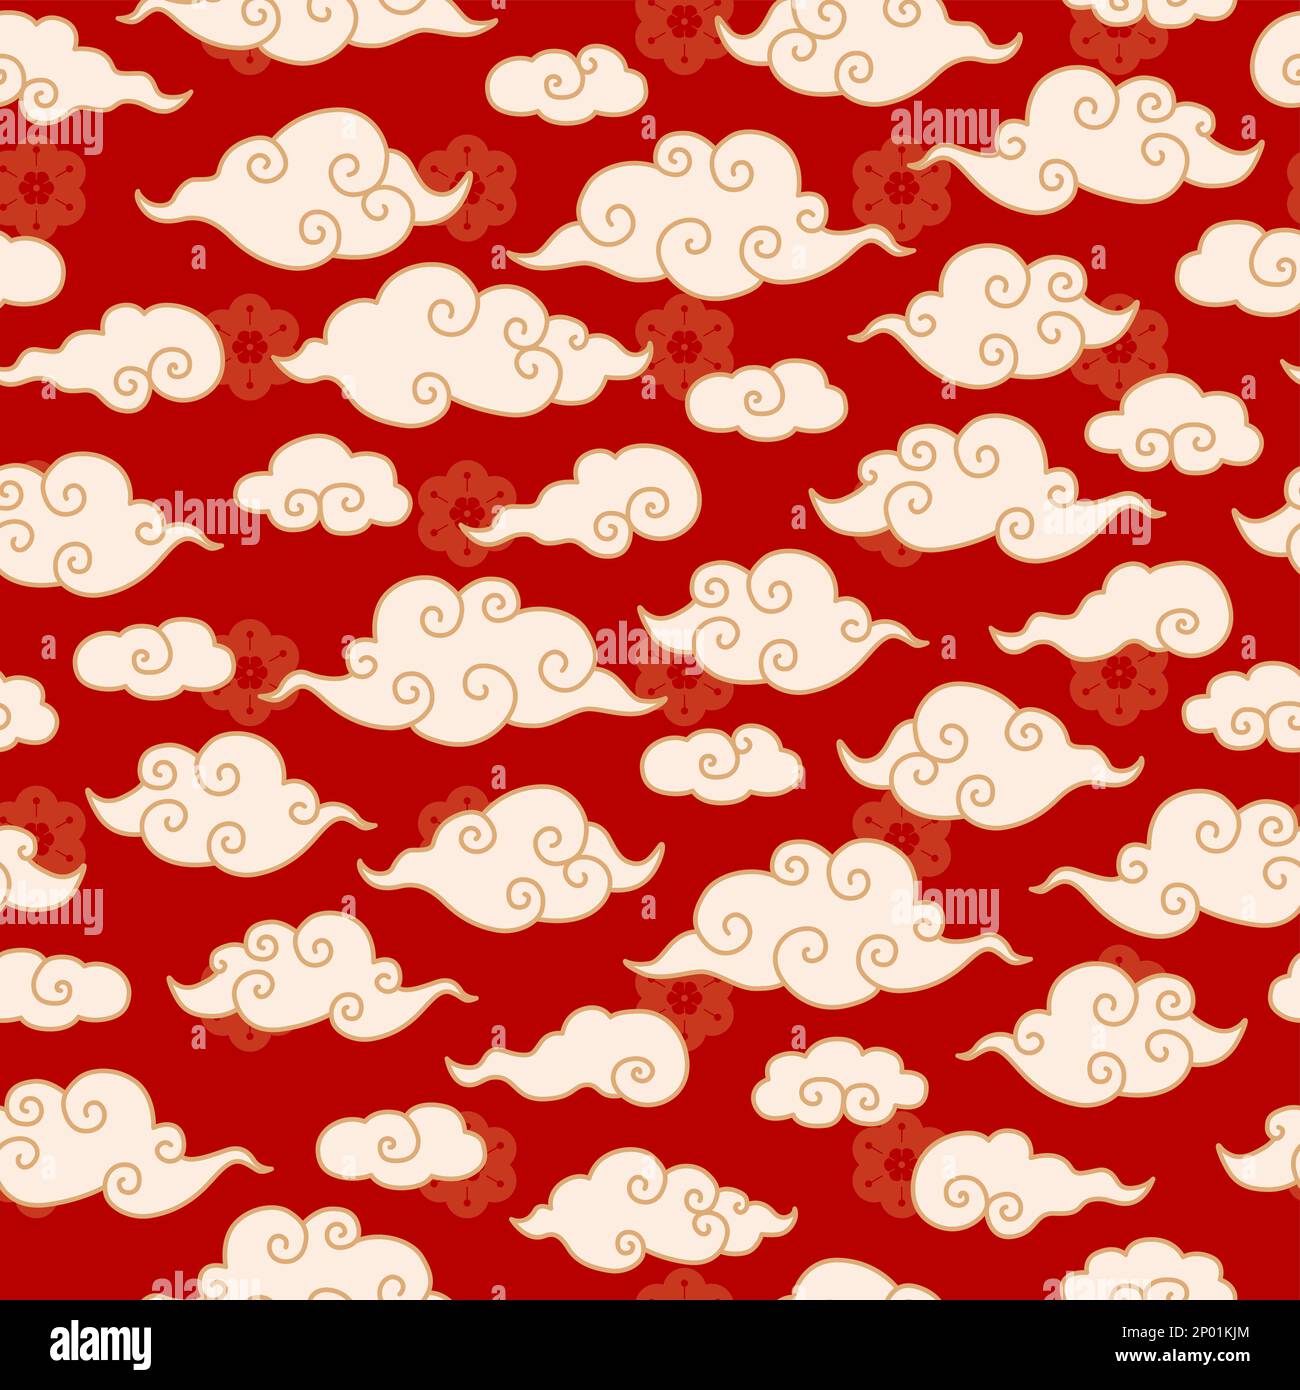 Vector Chinois, Coréen ou Japonais traditionnel Line Drawing Cloud Seamless Pattern. Illustration de Vecteur